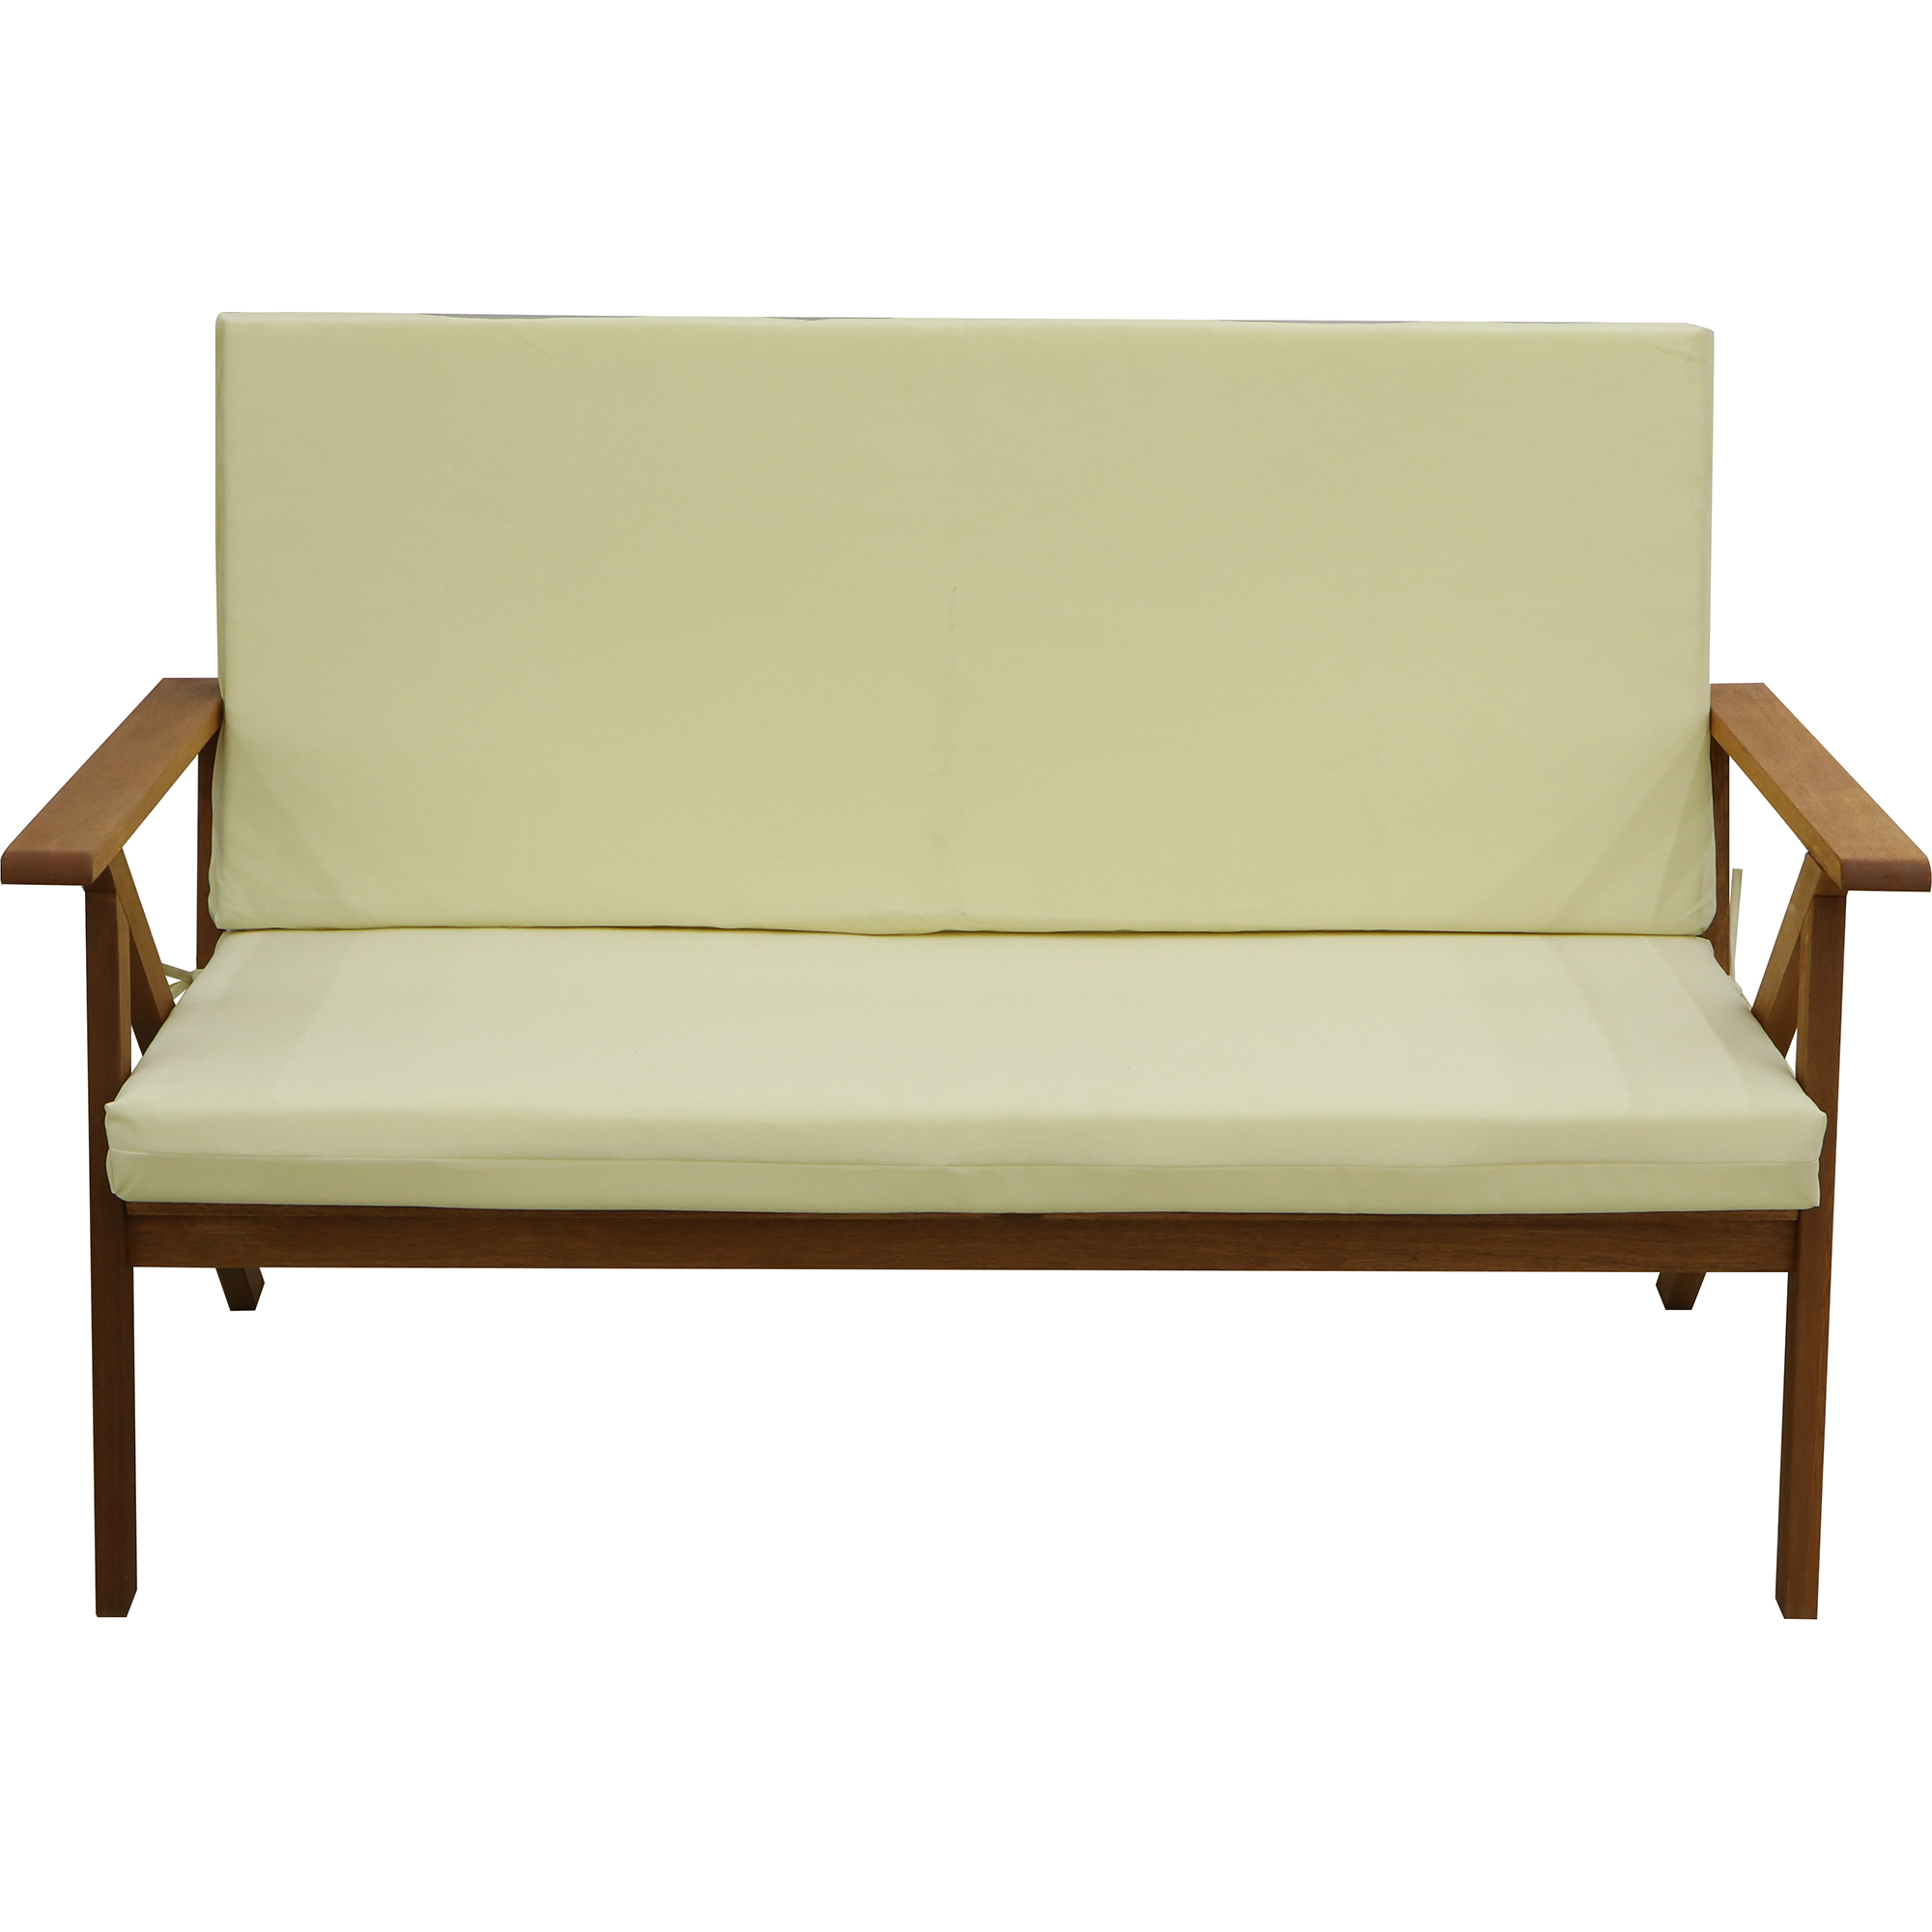 Комплект мебели Opal reliance sofa 4 предмета - фото 3